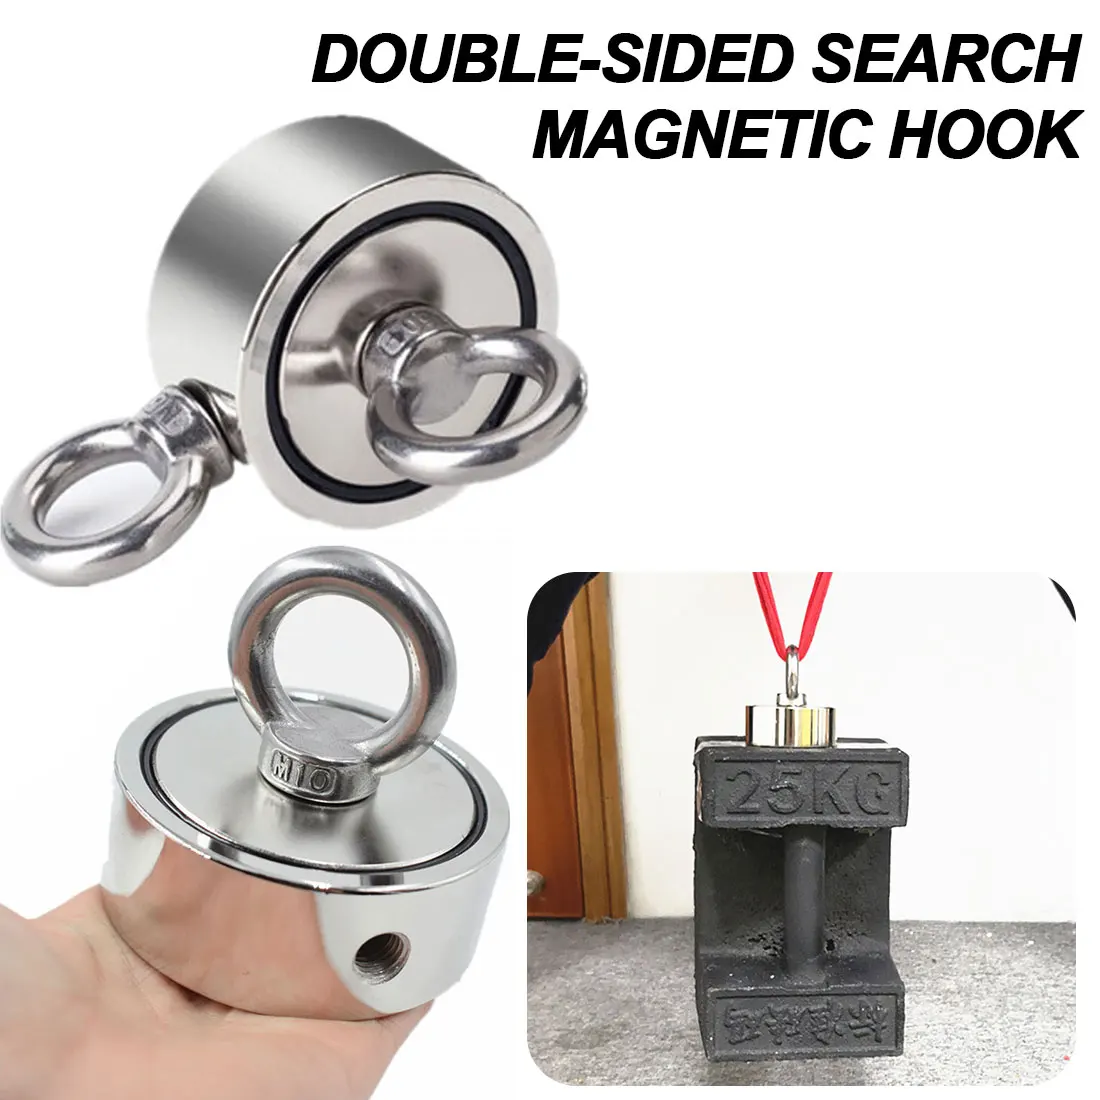 

D48-D75 неодимовое магнитное кольцо, мощный магнитный крючок, двусторонний поисковый рыболовный магнит, мощный спасательный магнит, набор